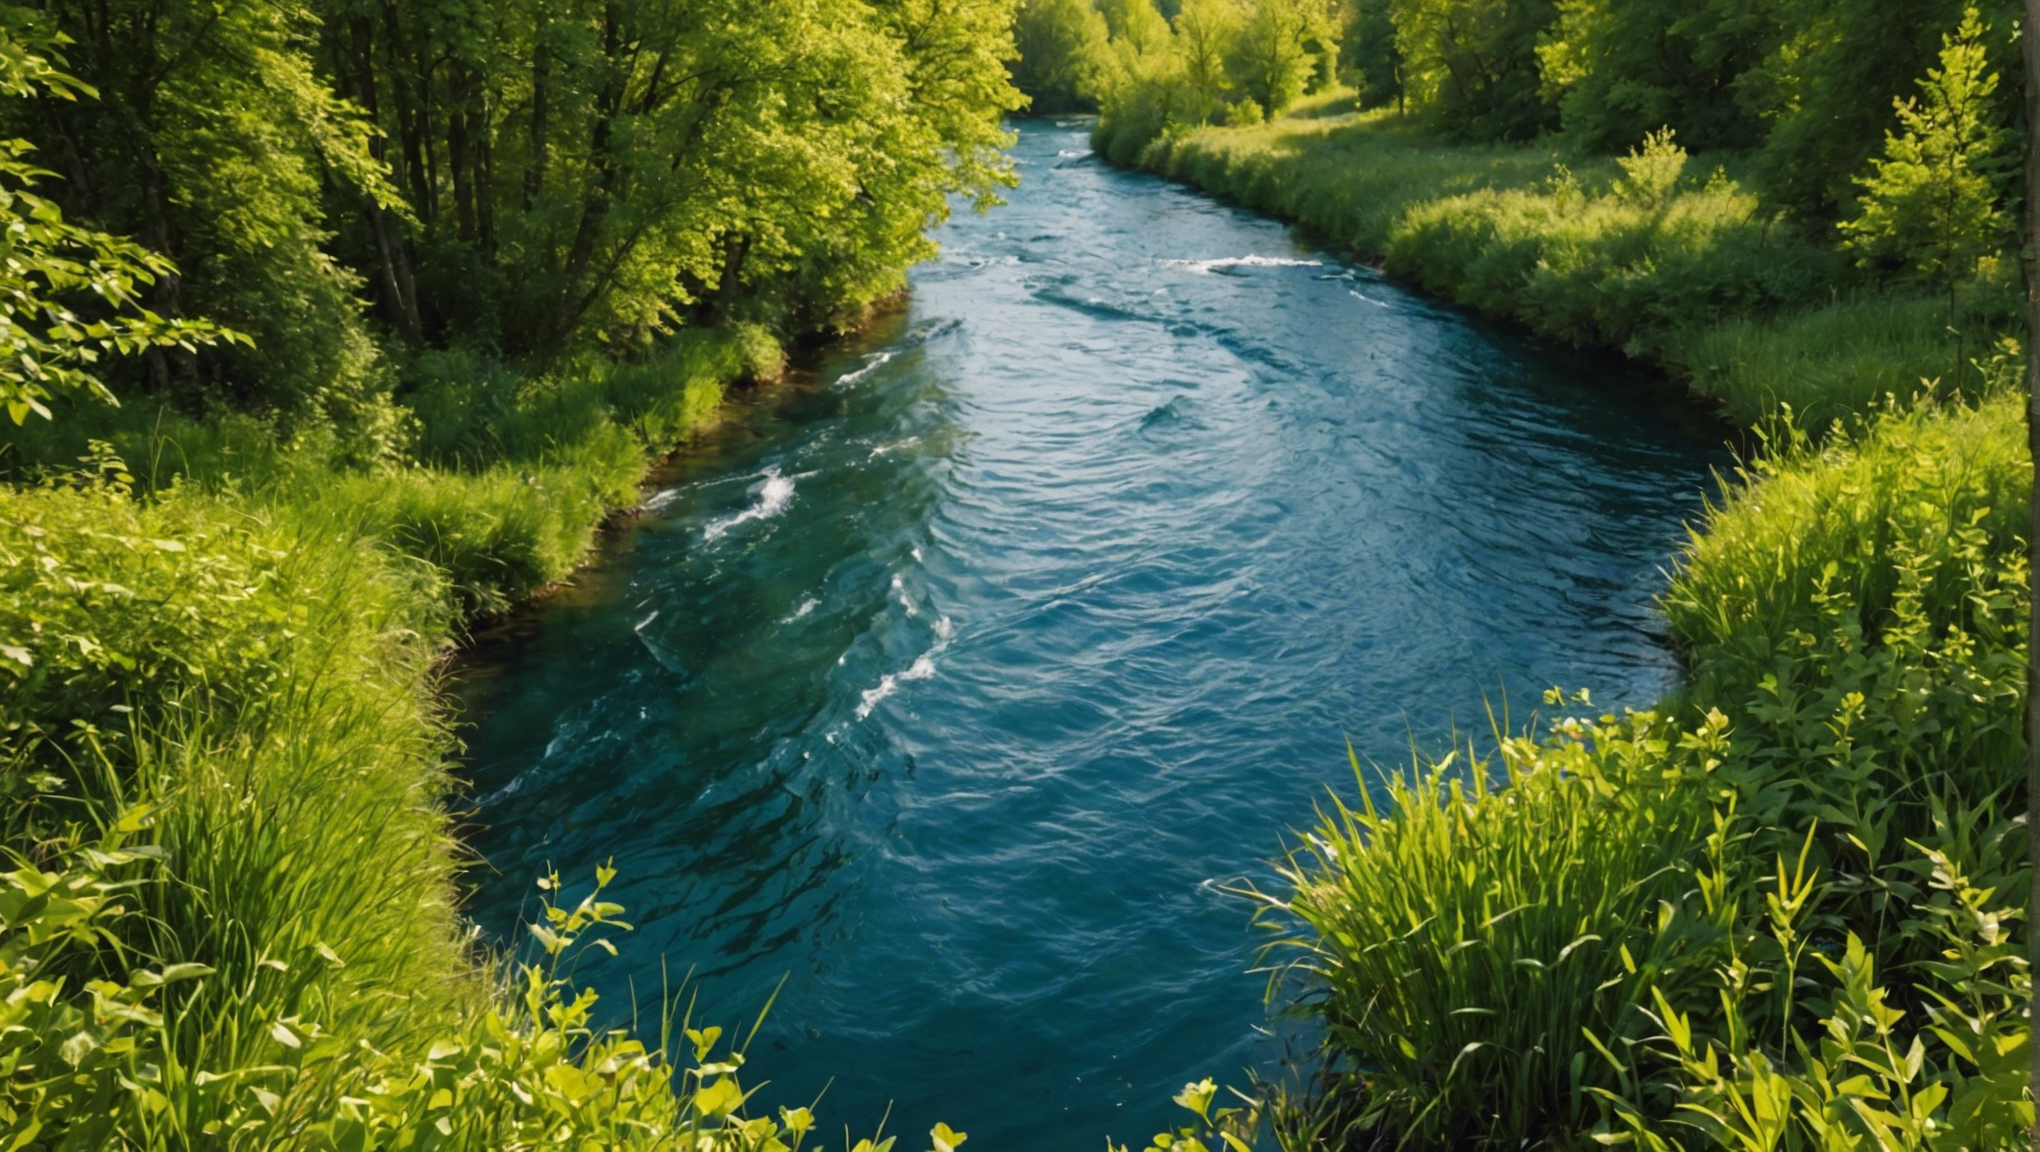 découvrez comment valoriser l'eau de façon durable pour protéger notre environnement dans cet article informatif.